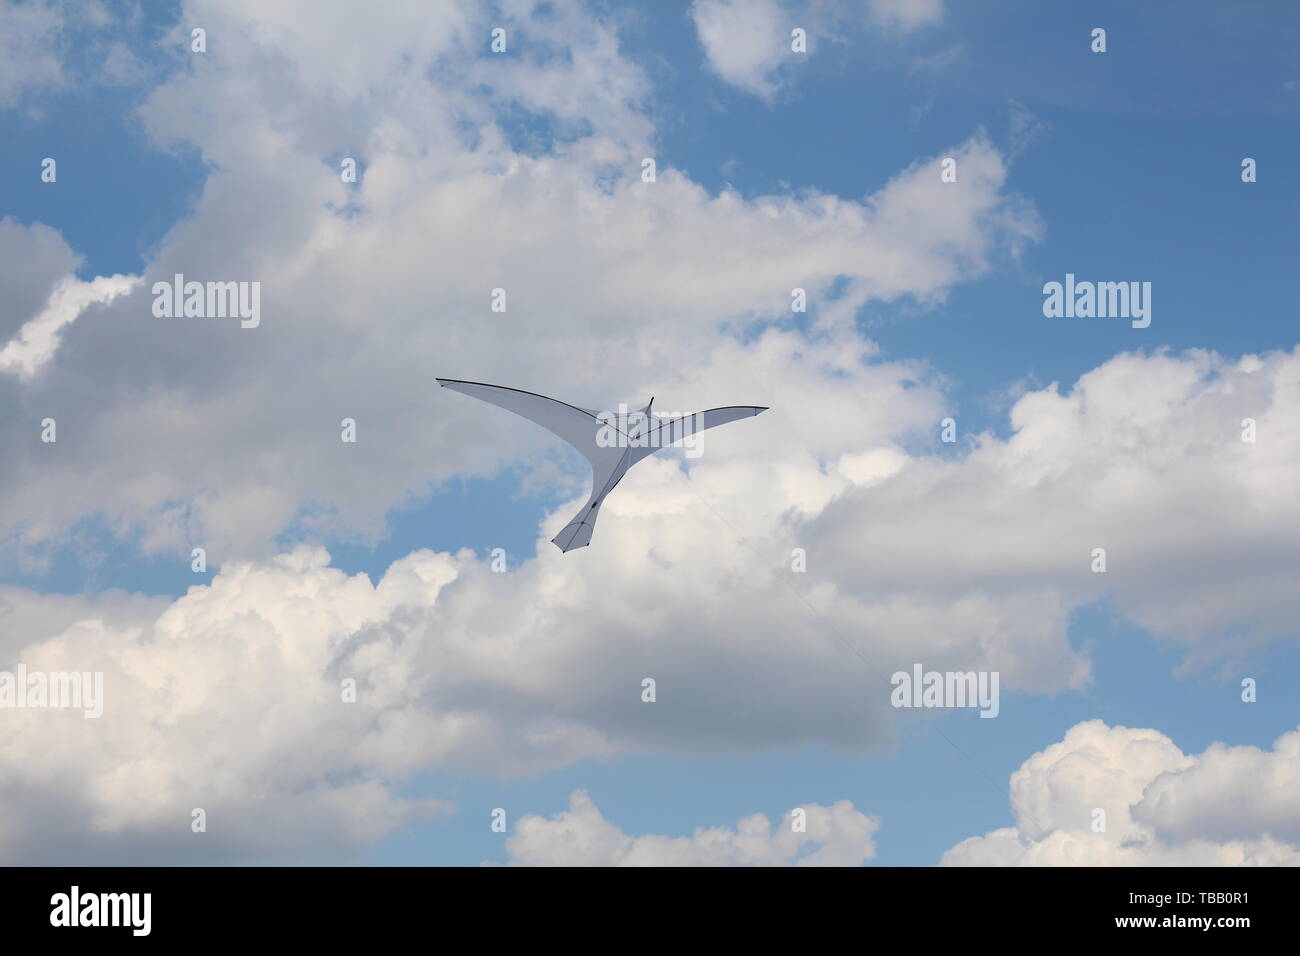 Einen Drachen in Form einer einzigen großen weißen Vogel. Einen Drachen in den Himmel zwischen den Wolken. Großer weißer Vogel in den Himmel. Stockfoto